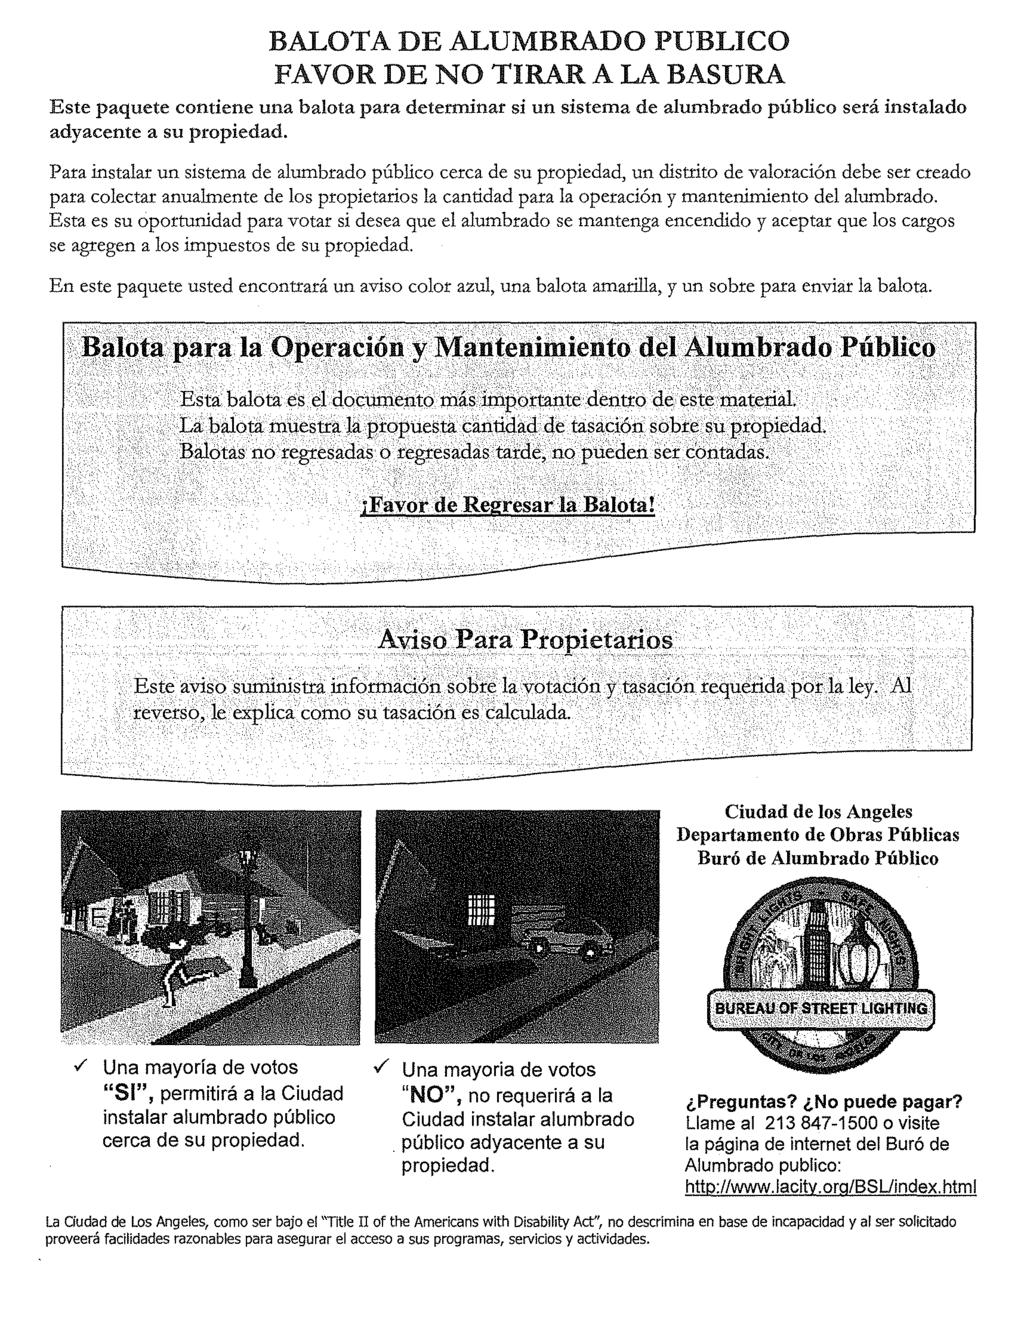 BALOTA DE ALUMBRADO PUBLICO FAVOR DE NO TIRAR A LA BASURA Este paquete contiene una balota para determinar si un sistema de alumbrado publico sera instalado adyacente a su propiedad.